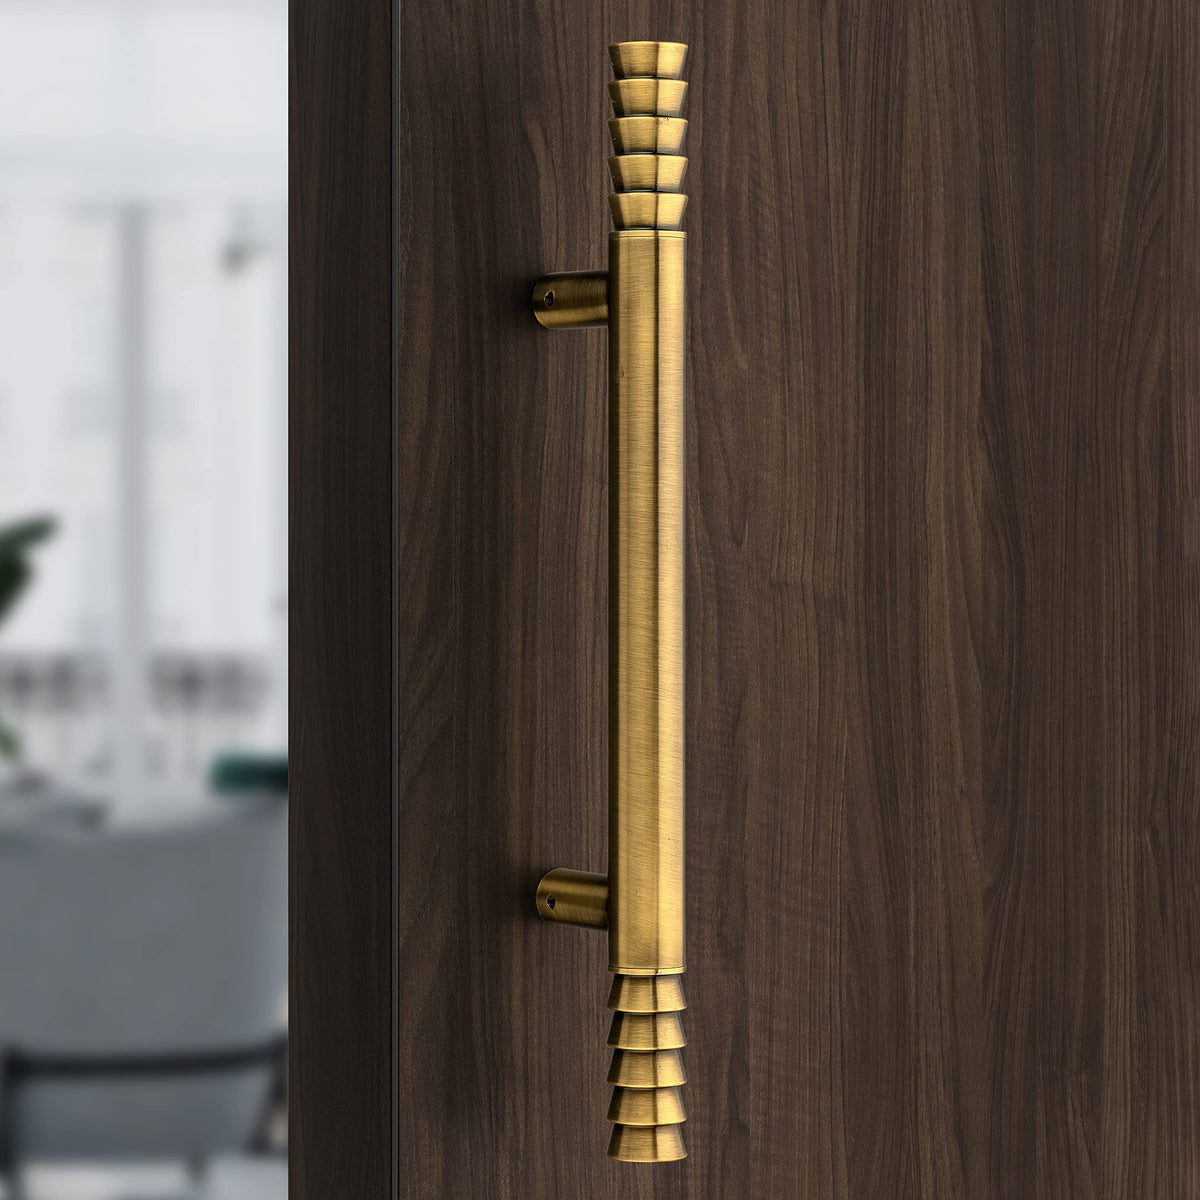 Plantex Main Door Handle/Door & Home Decore/14 Inch Main Door Handle/Pull-Push Handle - Pack of 1 (APS-103,Brass Antique)